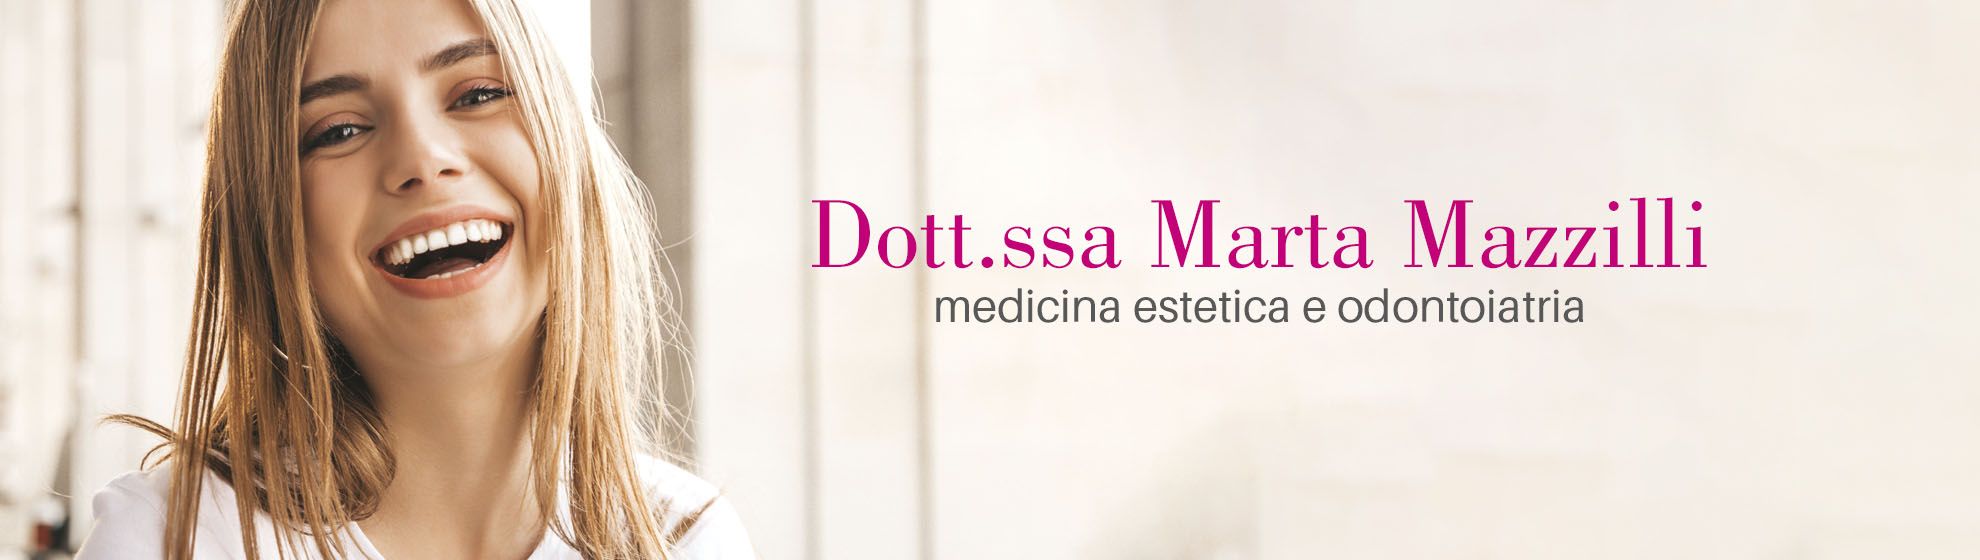 Dott.ssa Marta Mazzilli